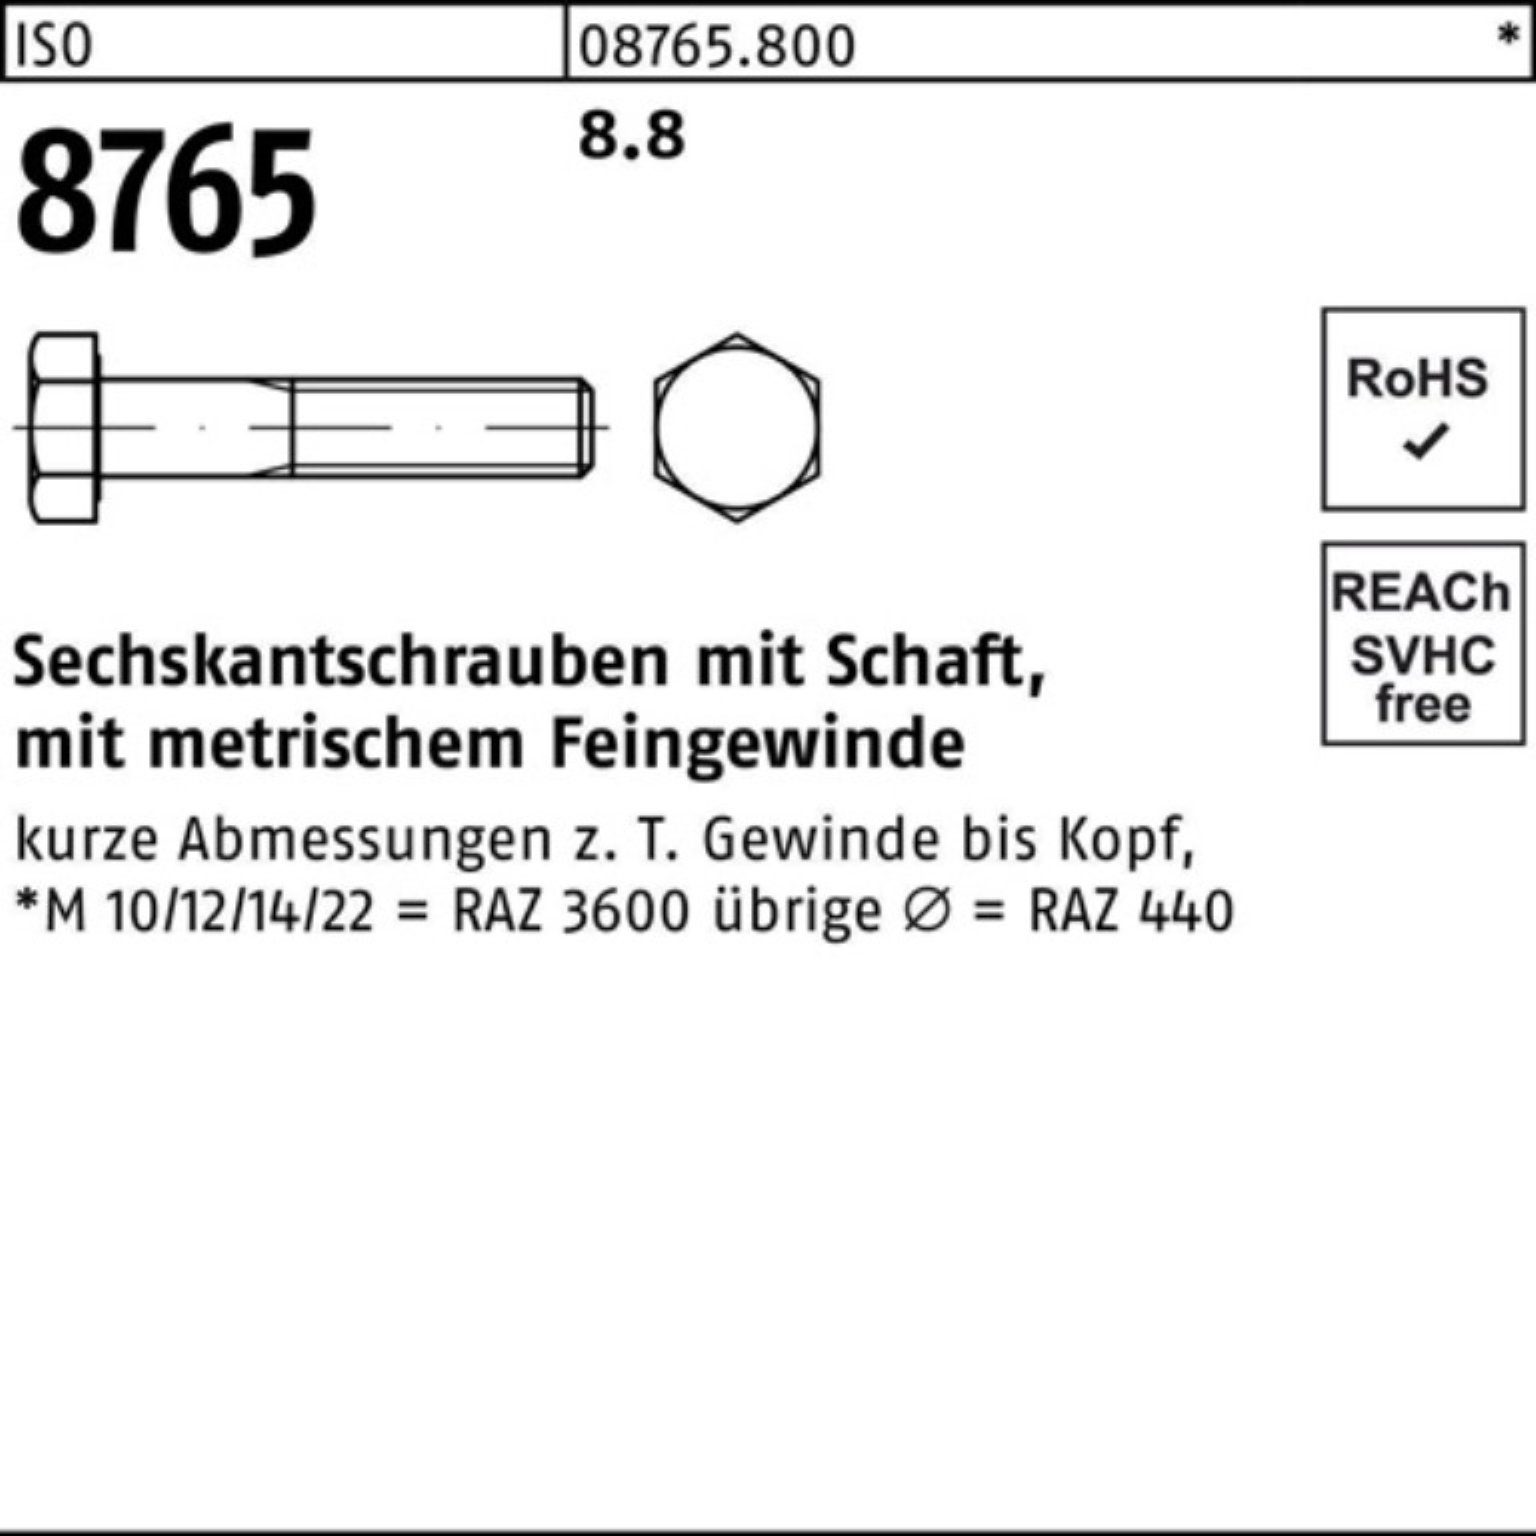 Reyher Sechskantschraube 100er 8.8 8765 Stüc ISO 50 Pack Sechskantschraube Schaft M10x1,25x120